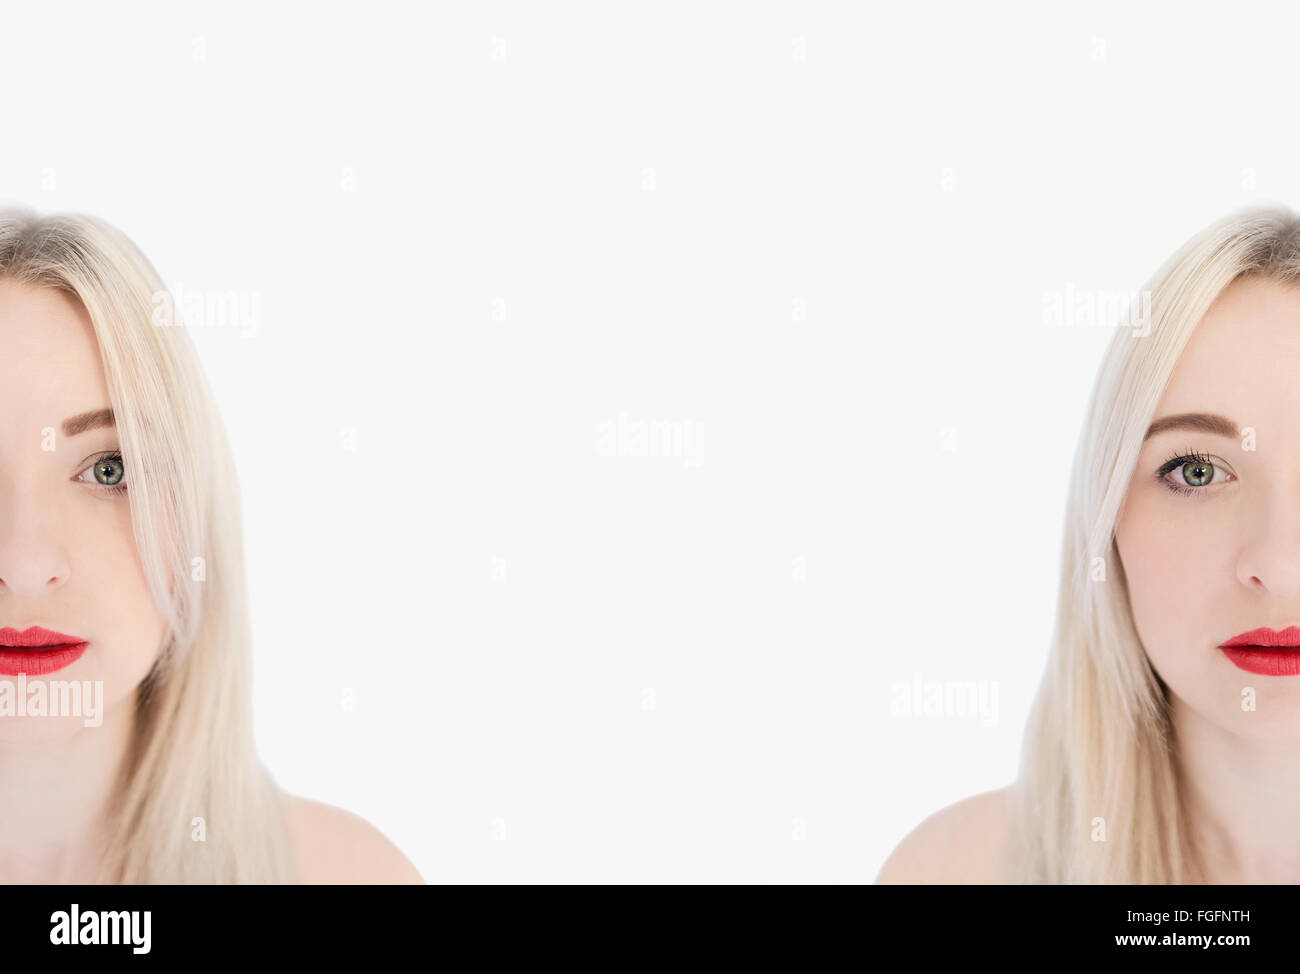 Retrato de dos gemelas idénticas a las mujeres con el cabello rubio y expresiones graves Foto de stock